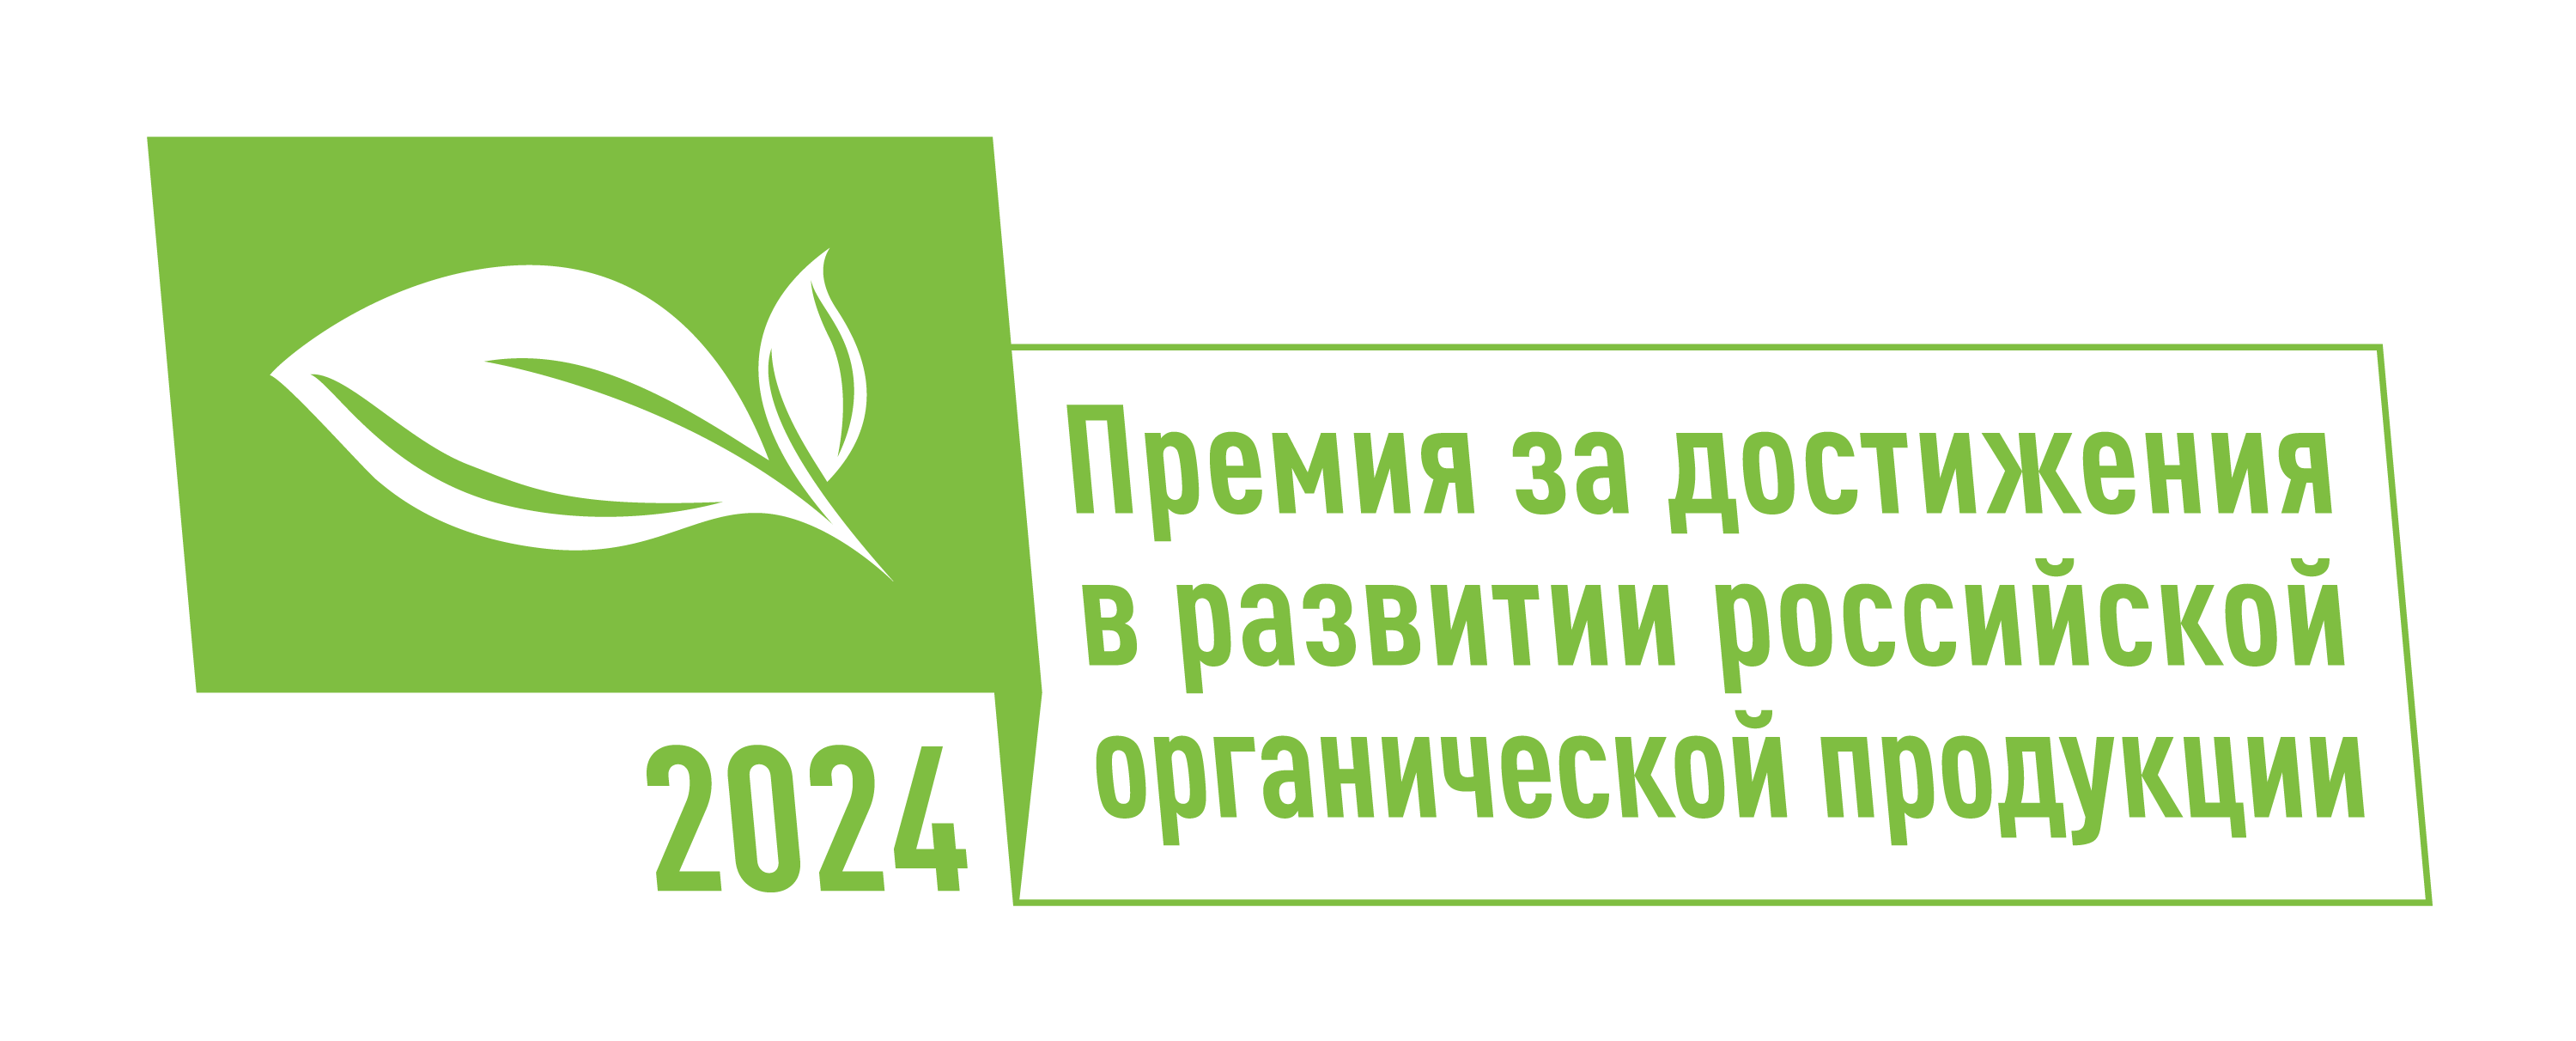 В России определят лучшие достижения в сфере органической продукции